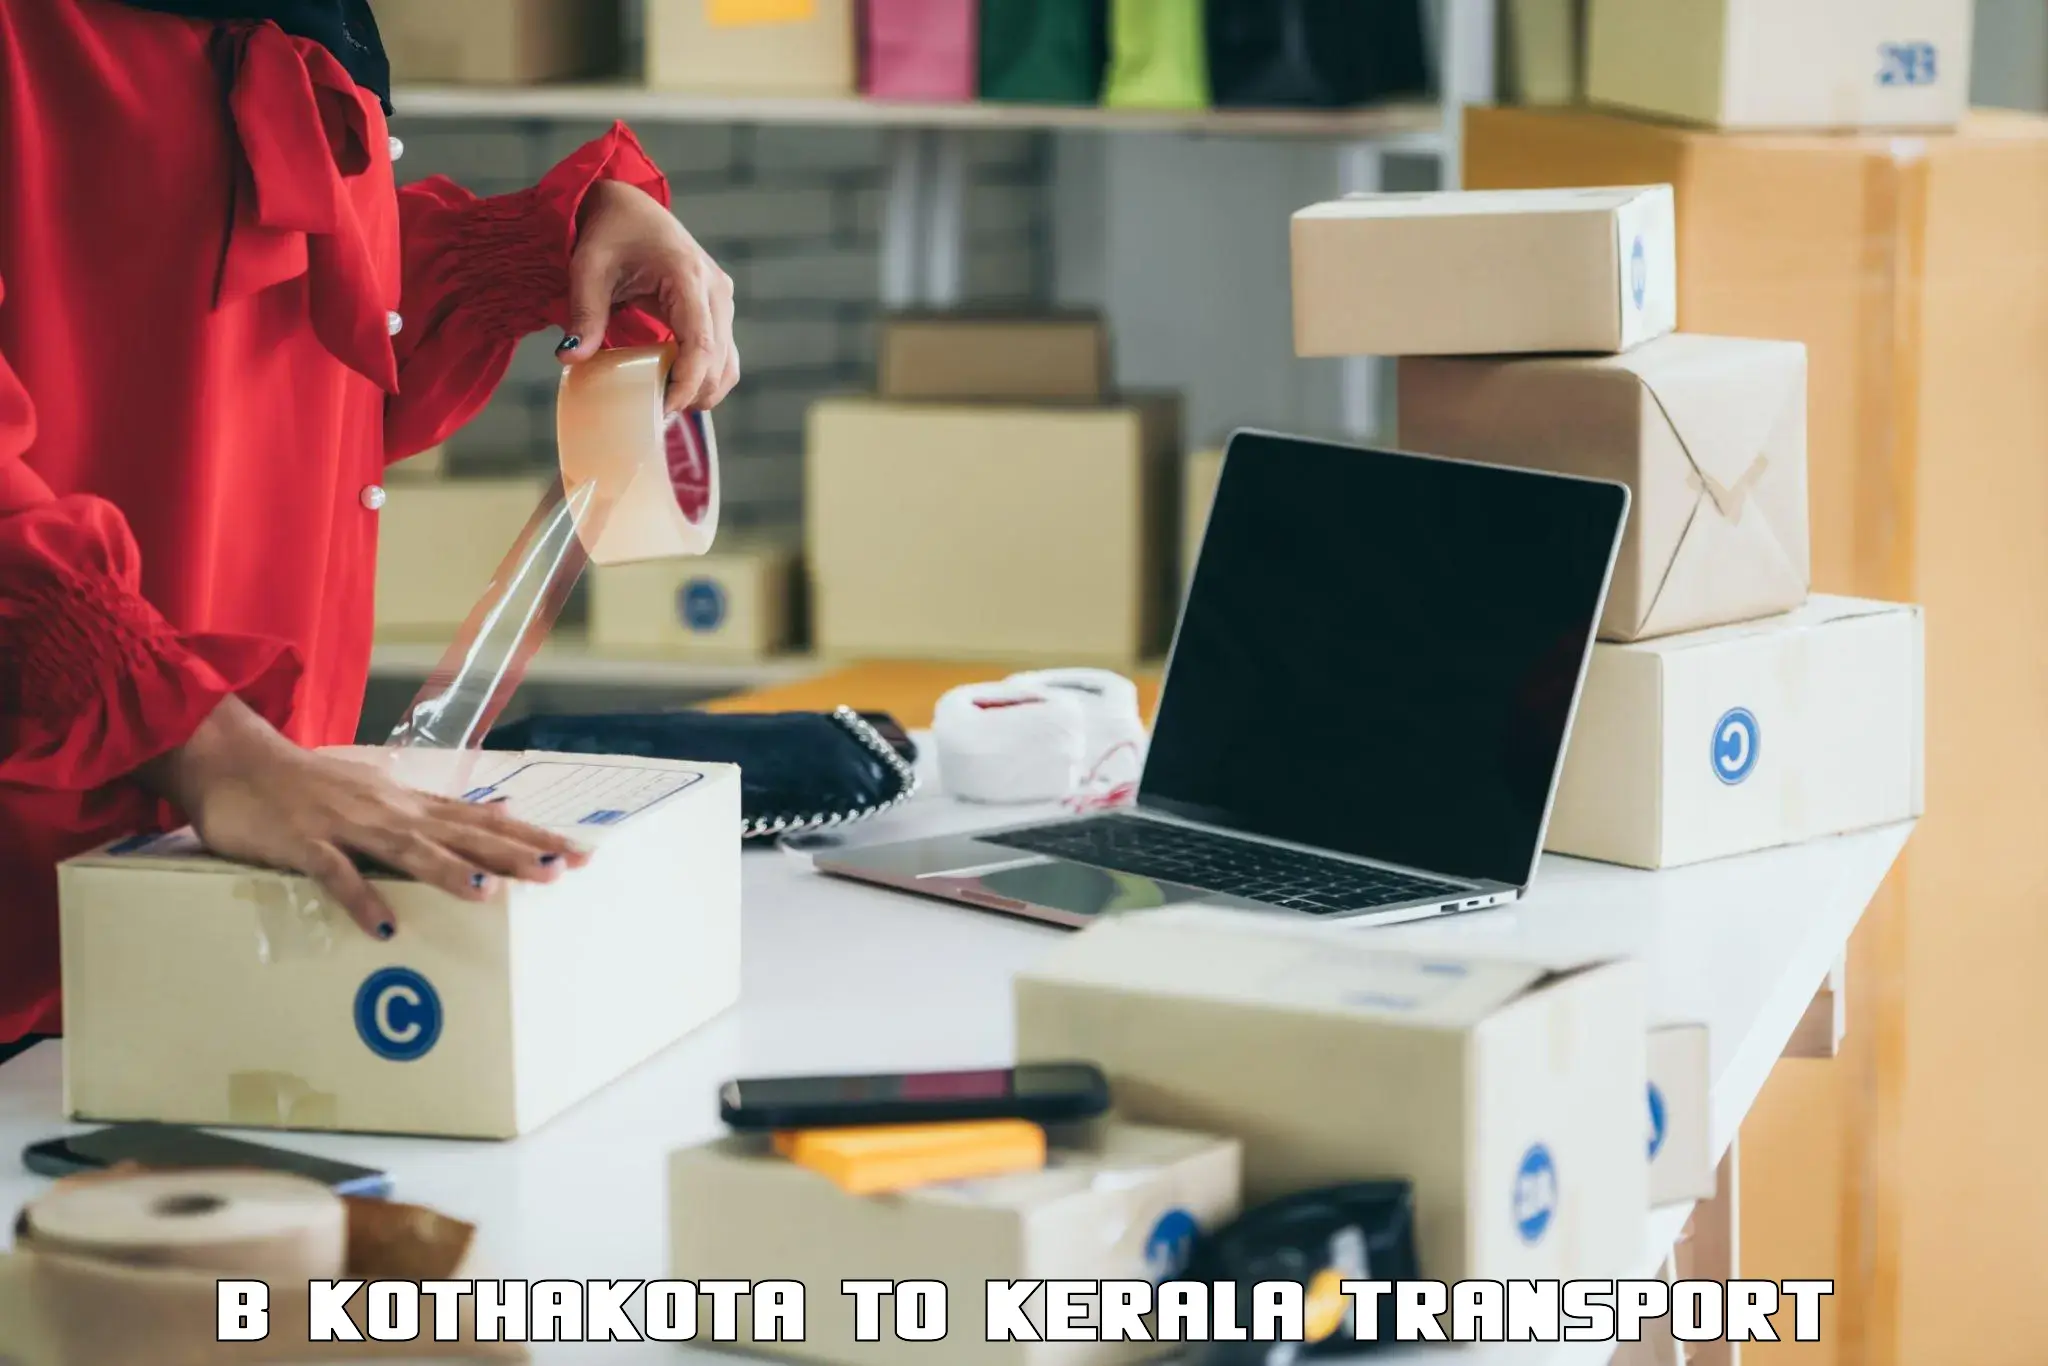 Furniture transport service B Kothakota to IIIT Kottayam